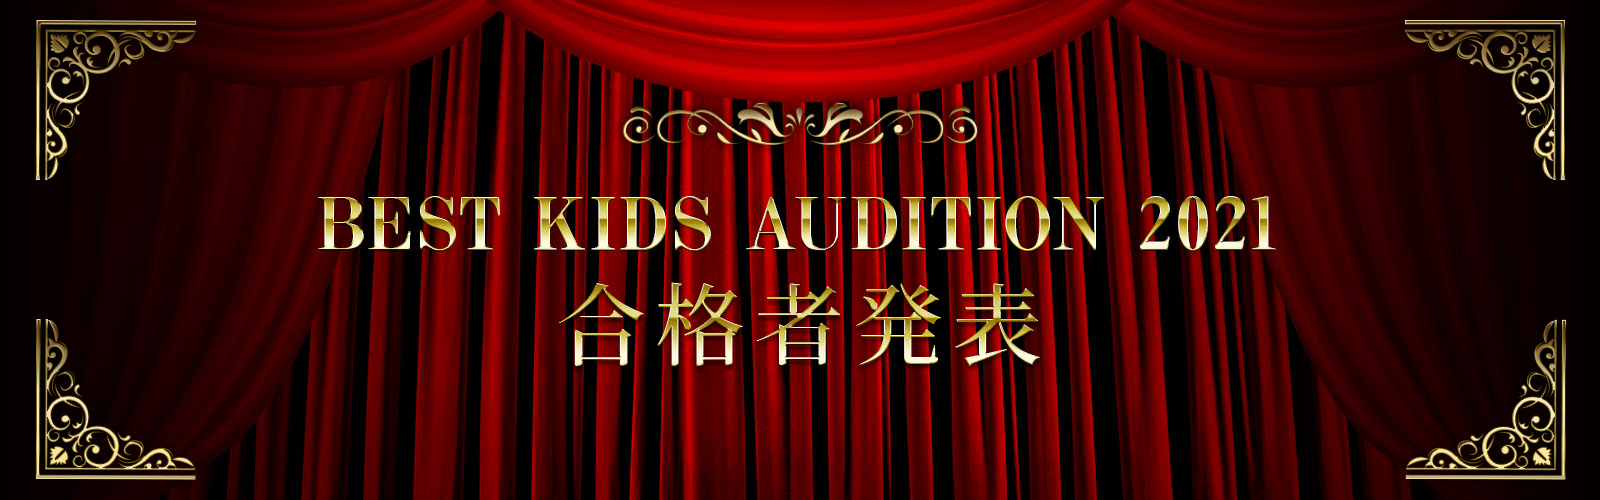 BEST KIDS AUDITION 2021合格者発表